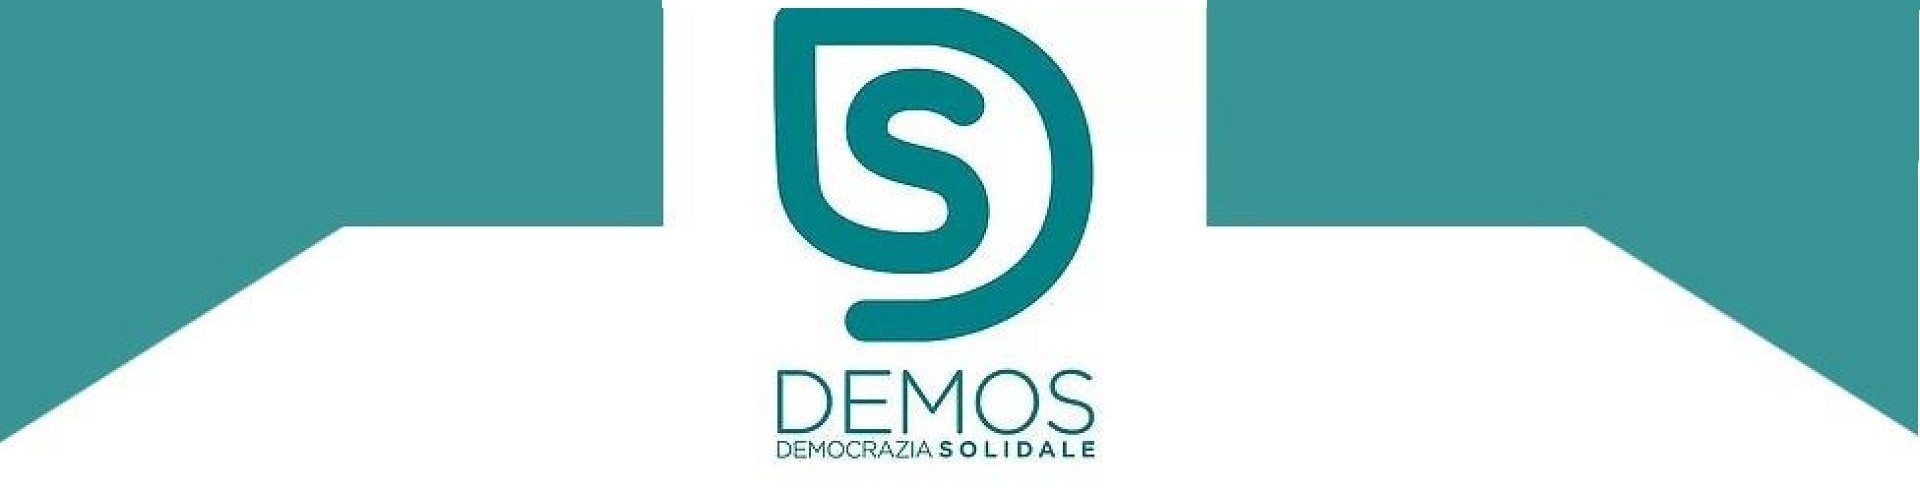 Demos Piemonte